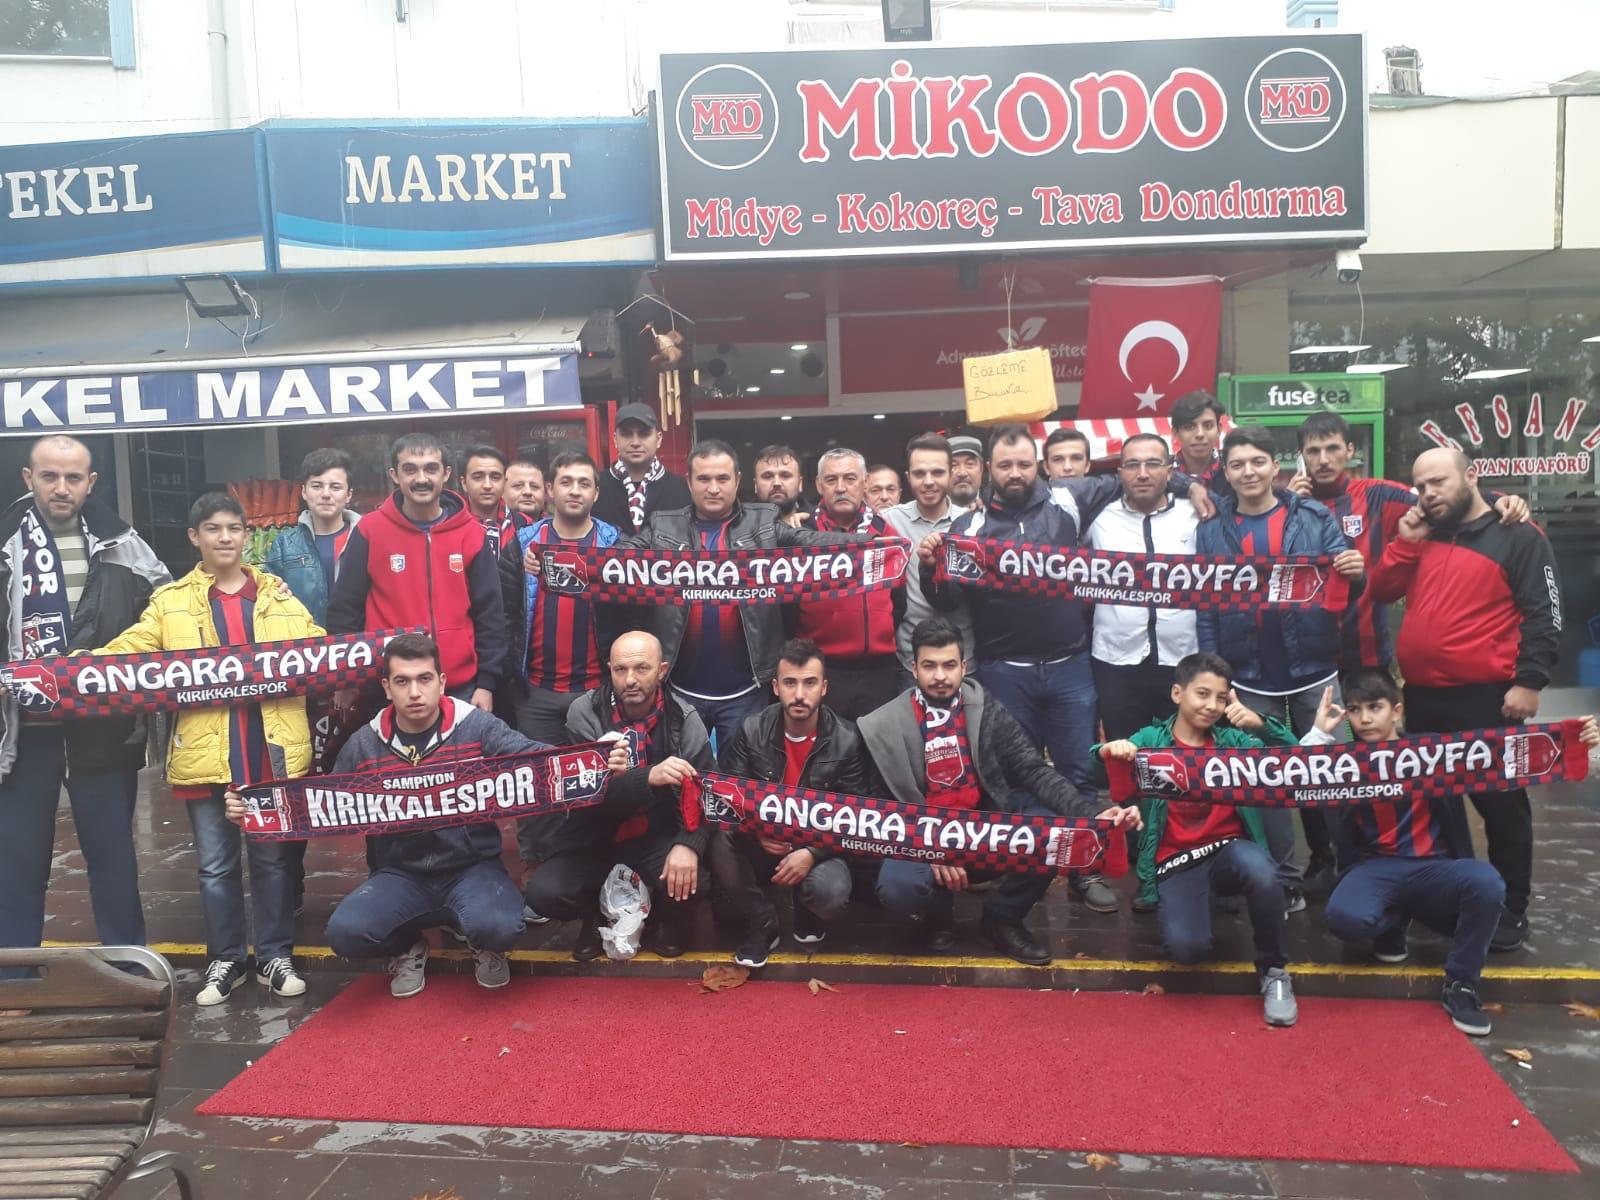 Ankara Tayfa Kırıkkalelileri maça getiriyor - Kırıkkale Haber, Son Dakika Kırıkkale Haberleri